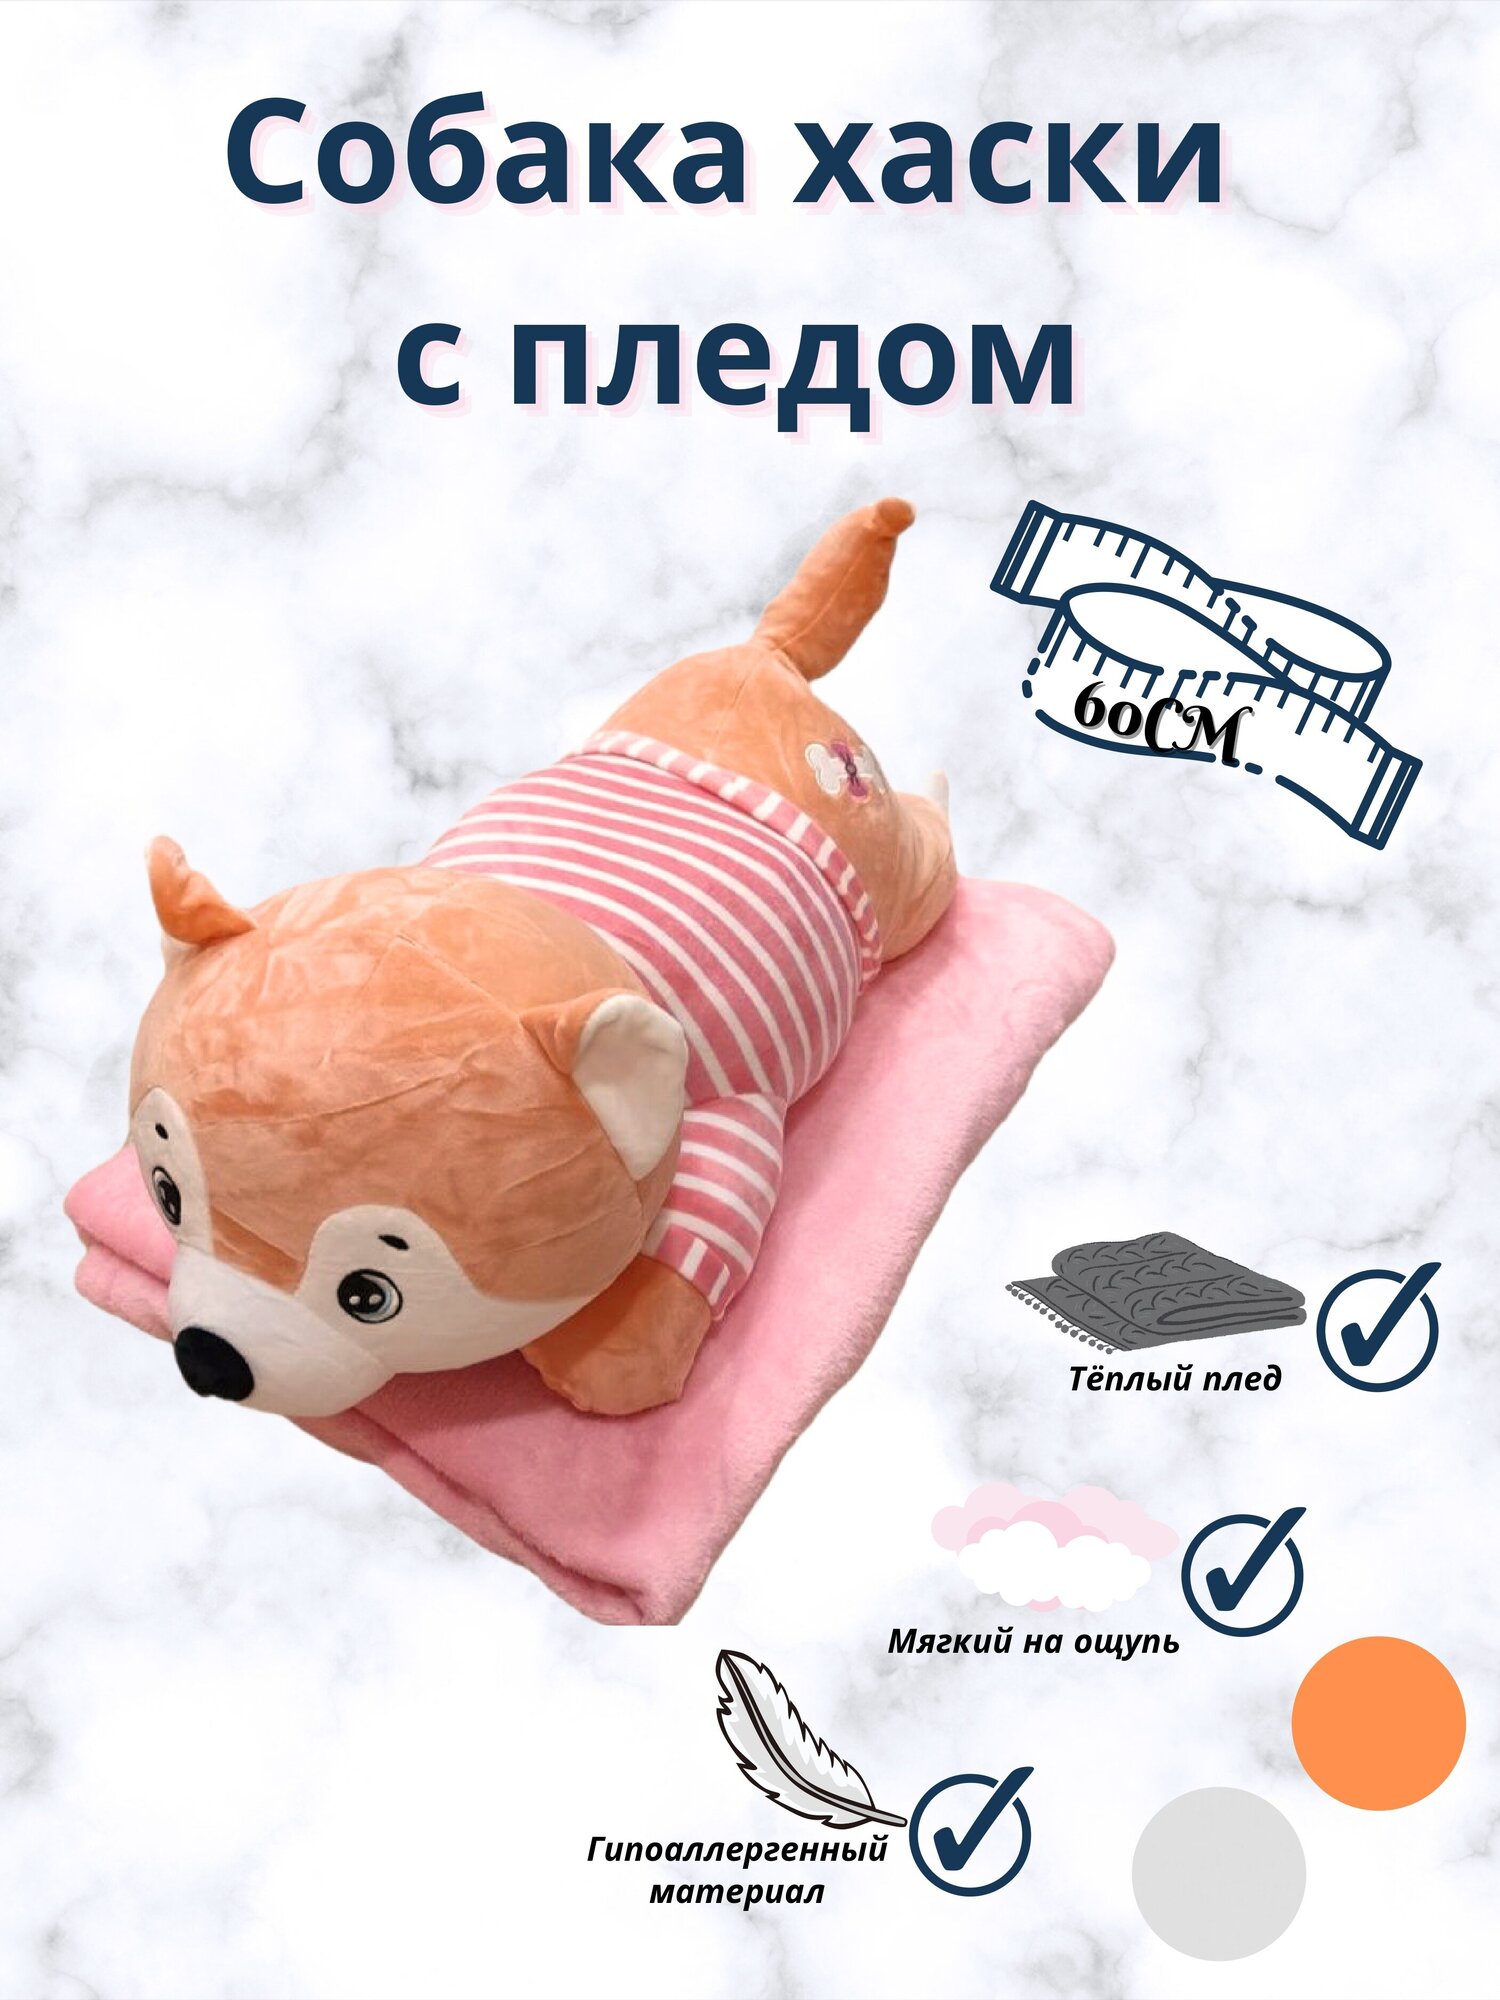 Мягкая игрушка Хаски с пледом 3 в 1 лежачий розовый. 60 см. Плюшевая Игрушка - подушка Собака 3 в 1 с пледом (одеялом) внутри.